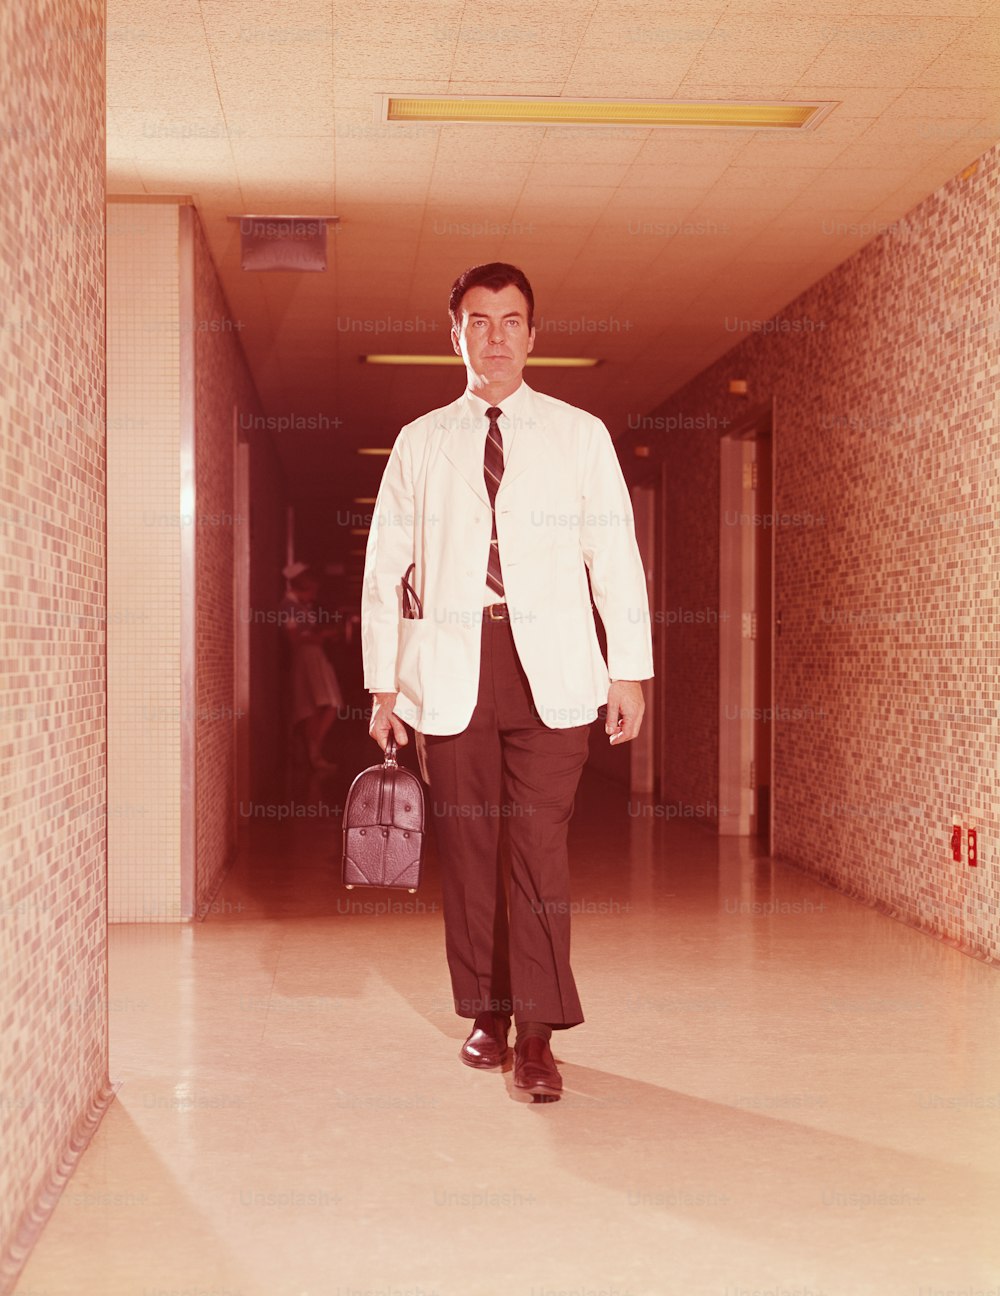 VEREINIGTE STAATEN - CA. 1960er Jahre: Arzt geht den Krankenhauskorridor entlang, Tasche tragend.